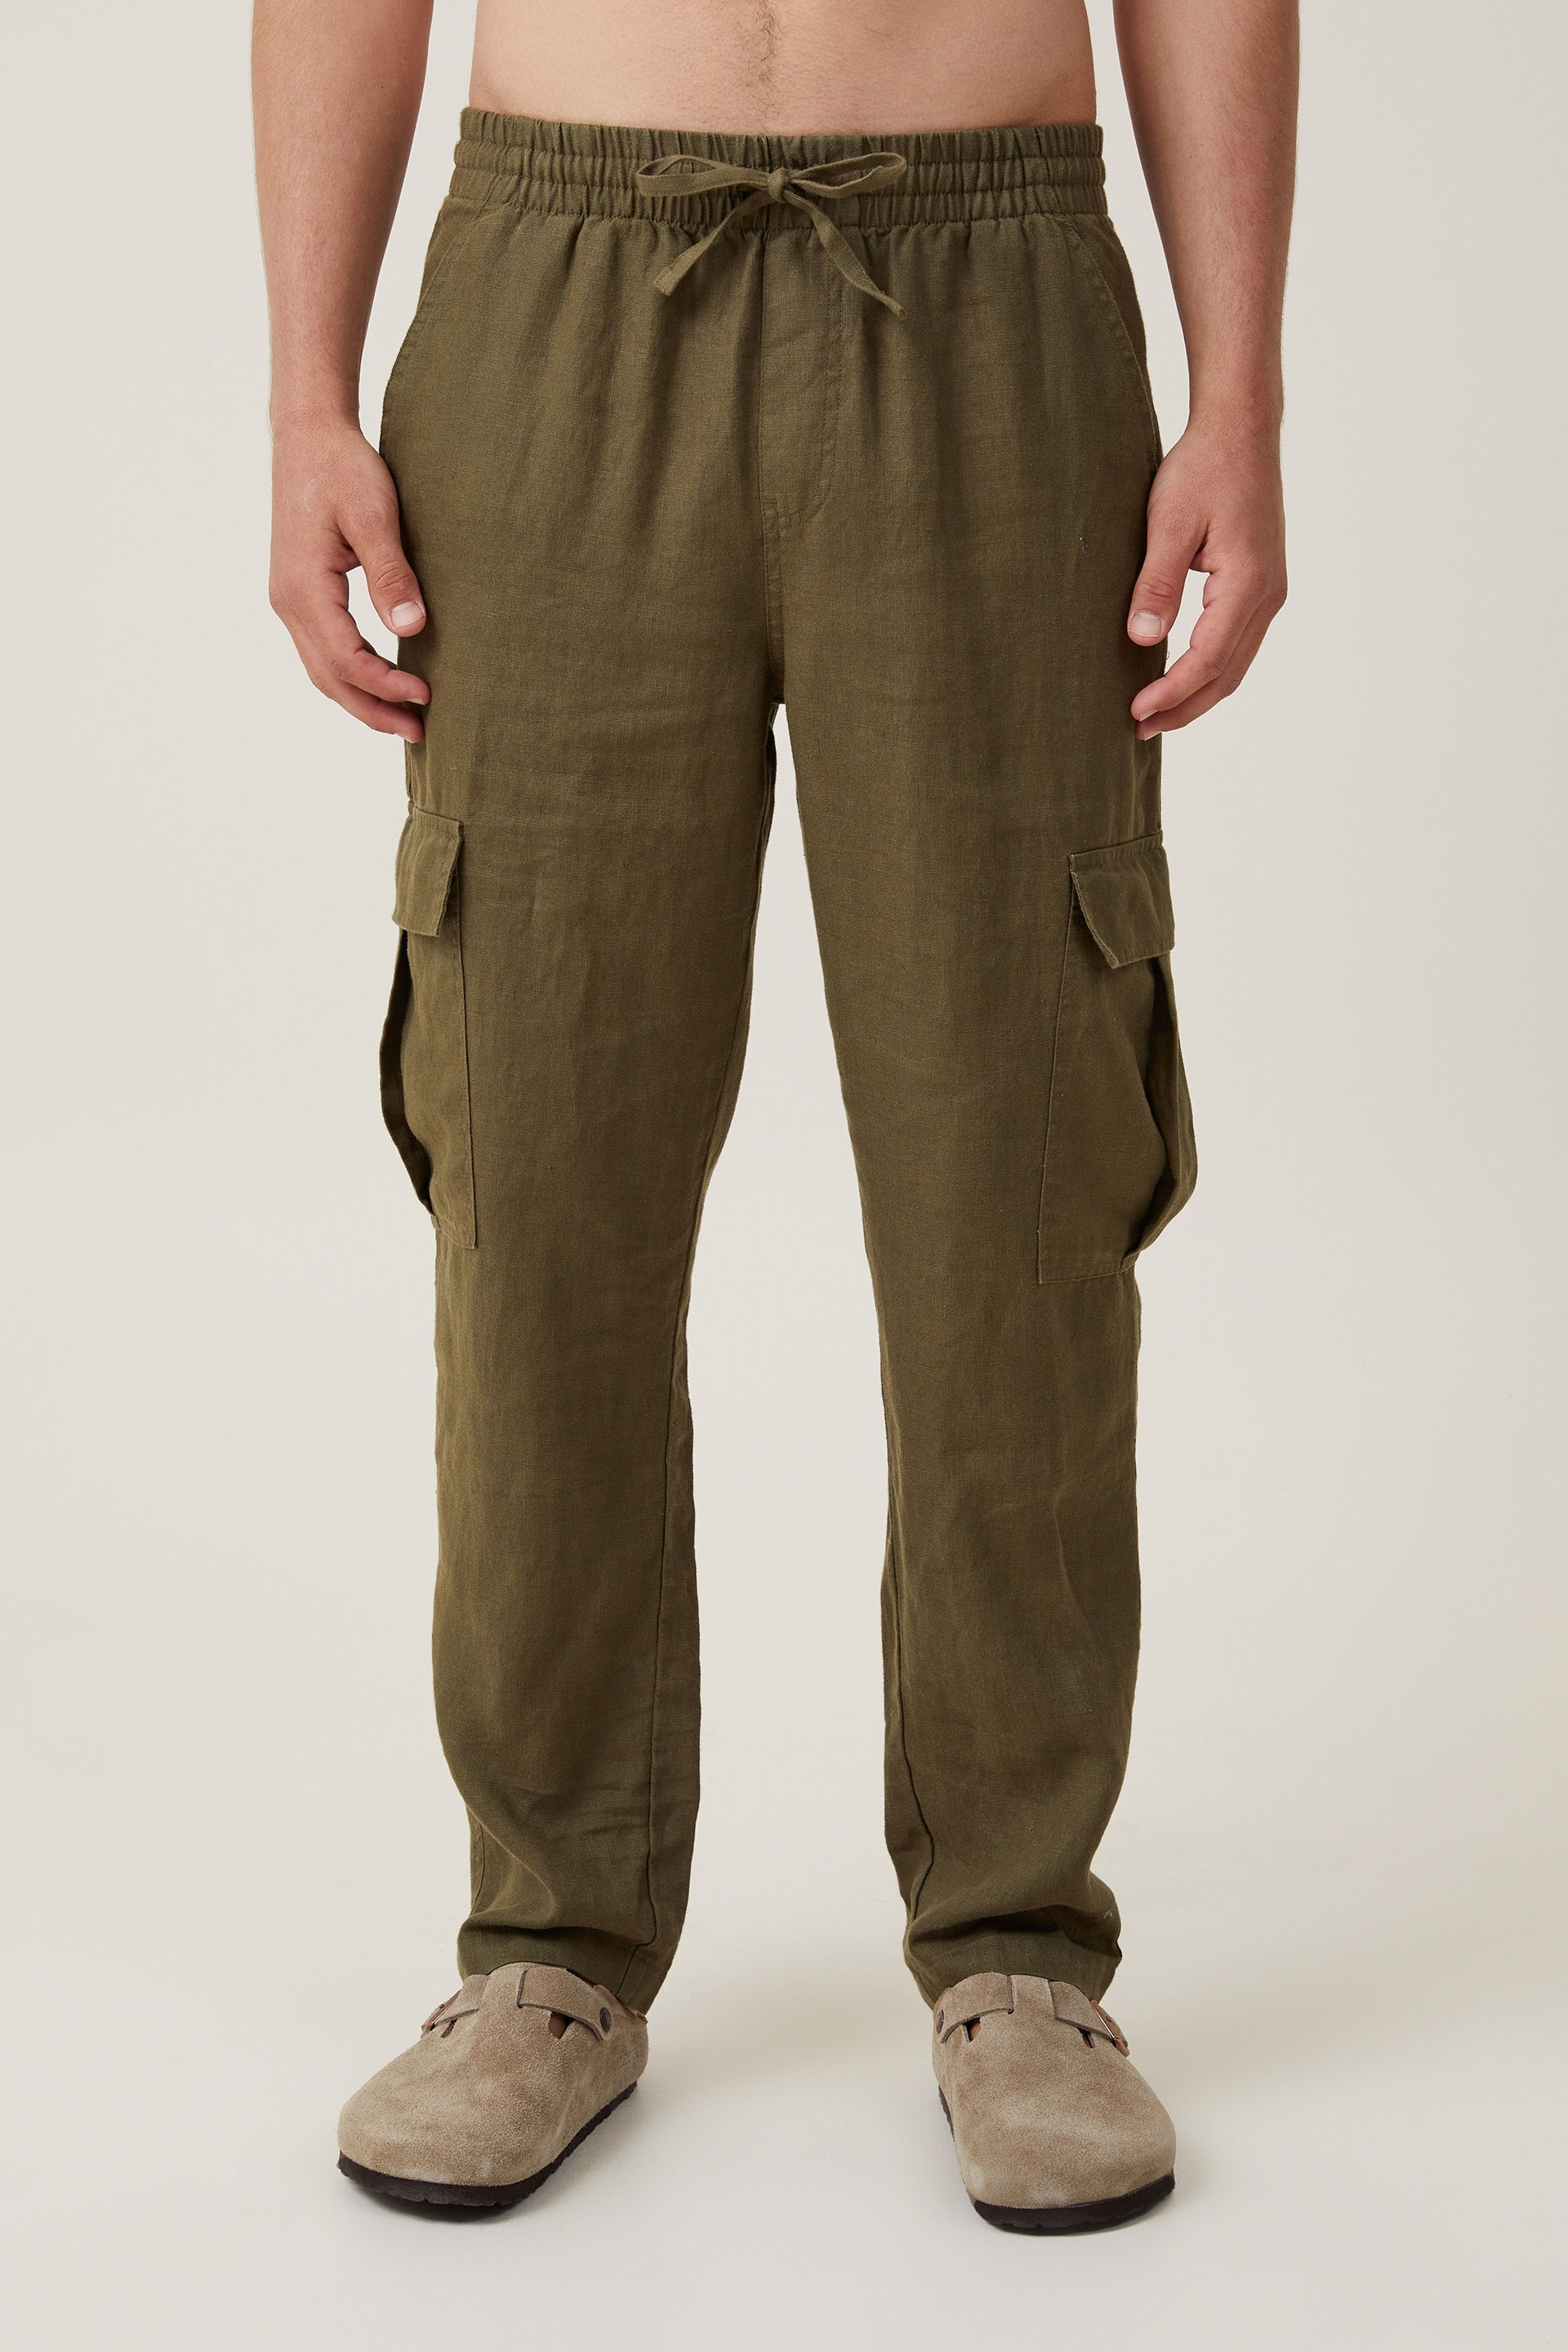 Plus Size Plus Size Sky Blue Cotton Linen Pants Online in India | Amydus